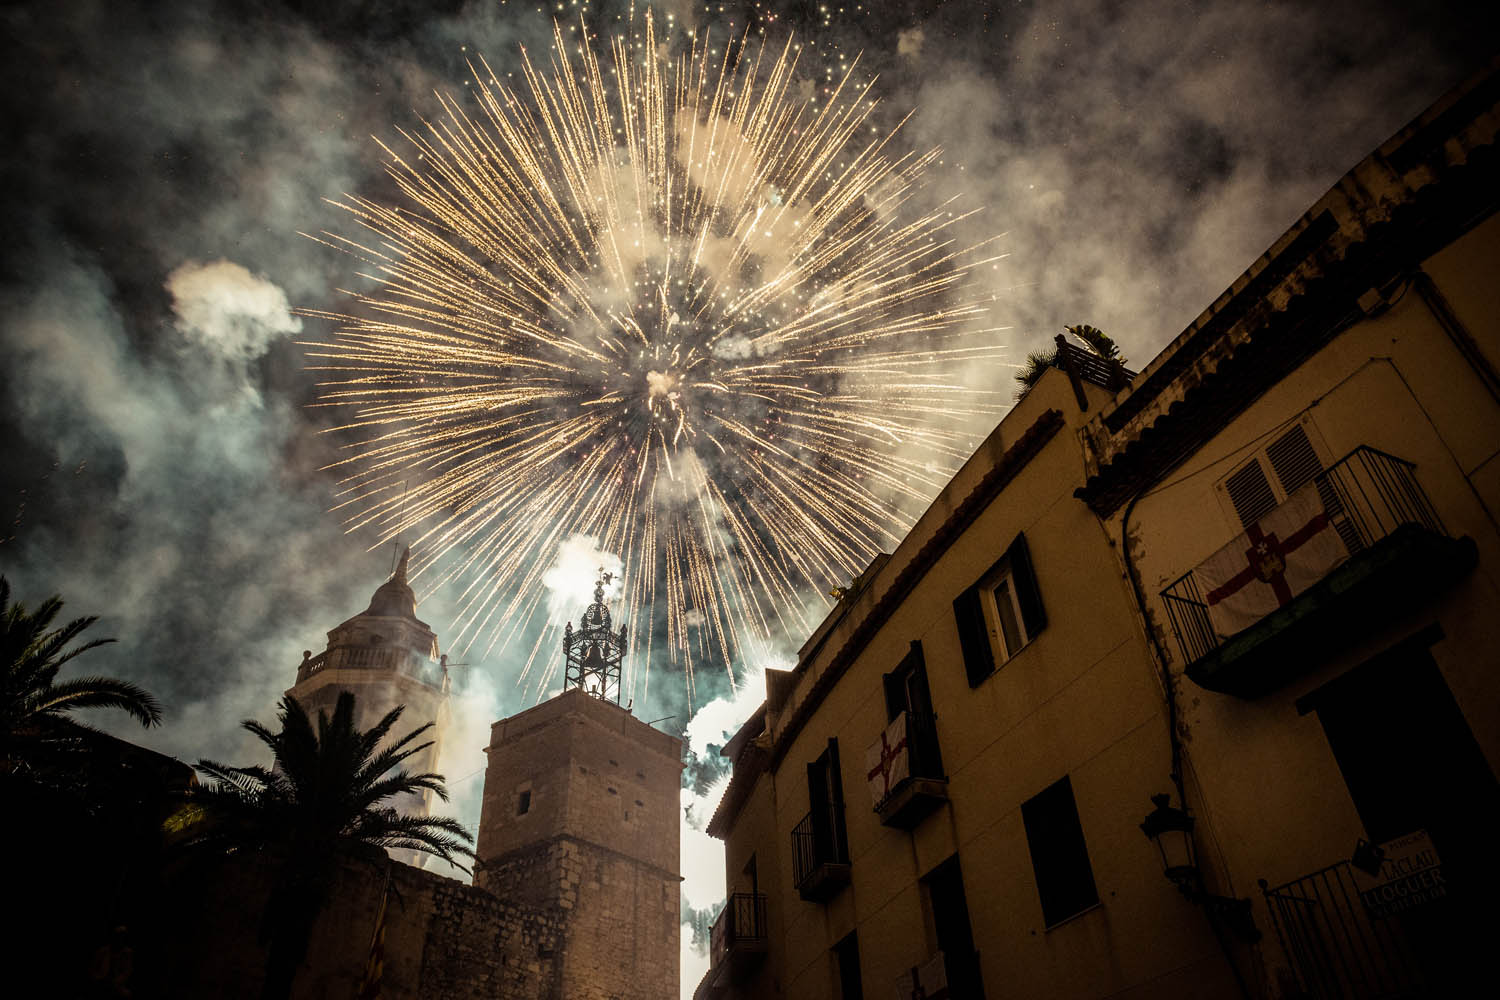 Devils and Fireworks at Festa Major of Sitges 2013